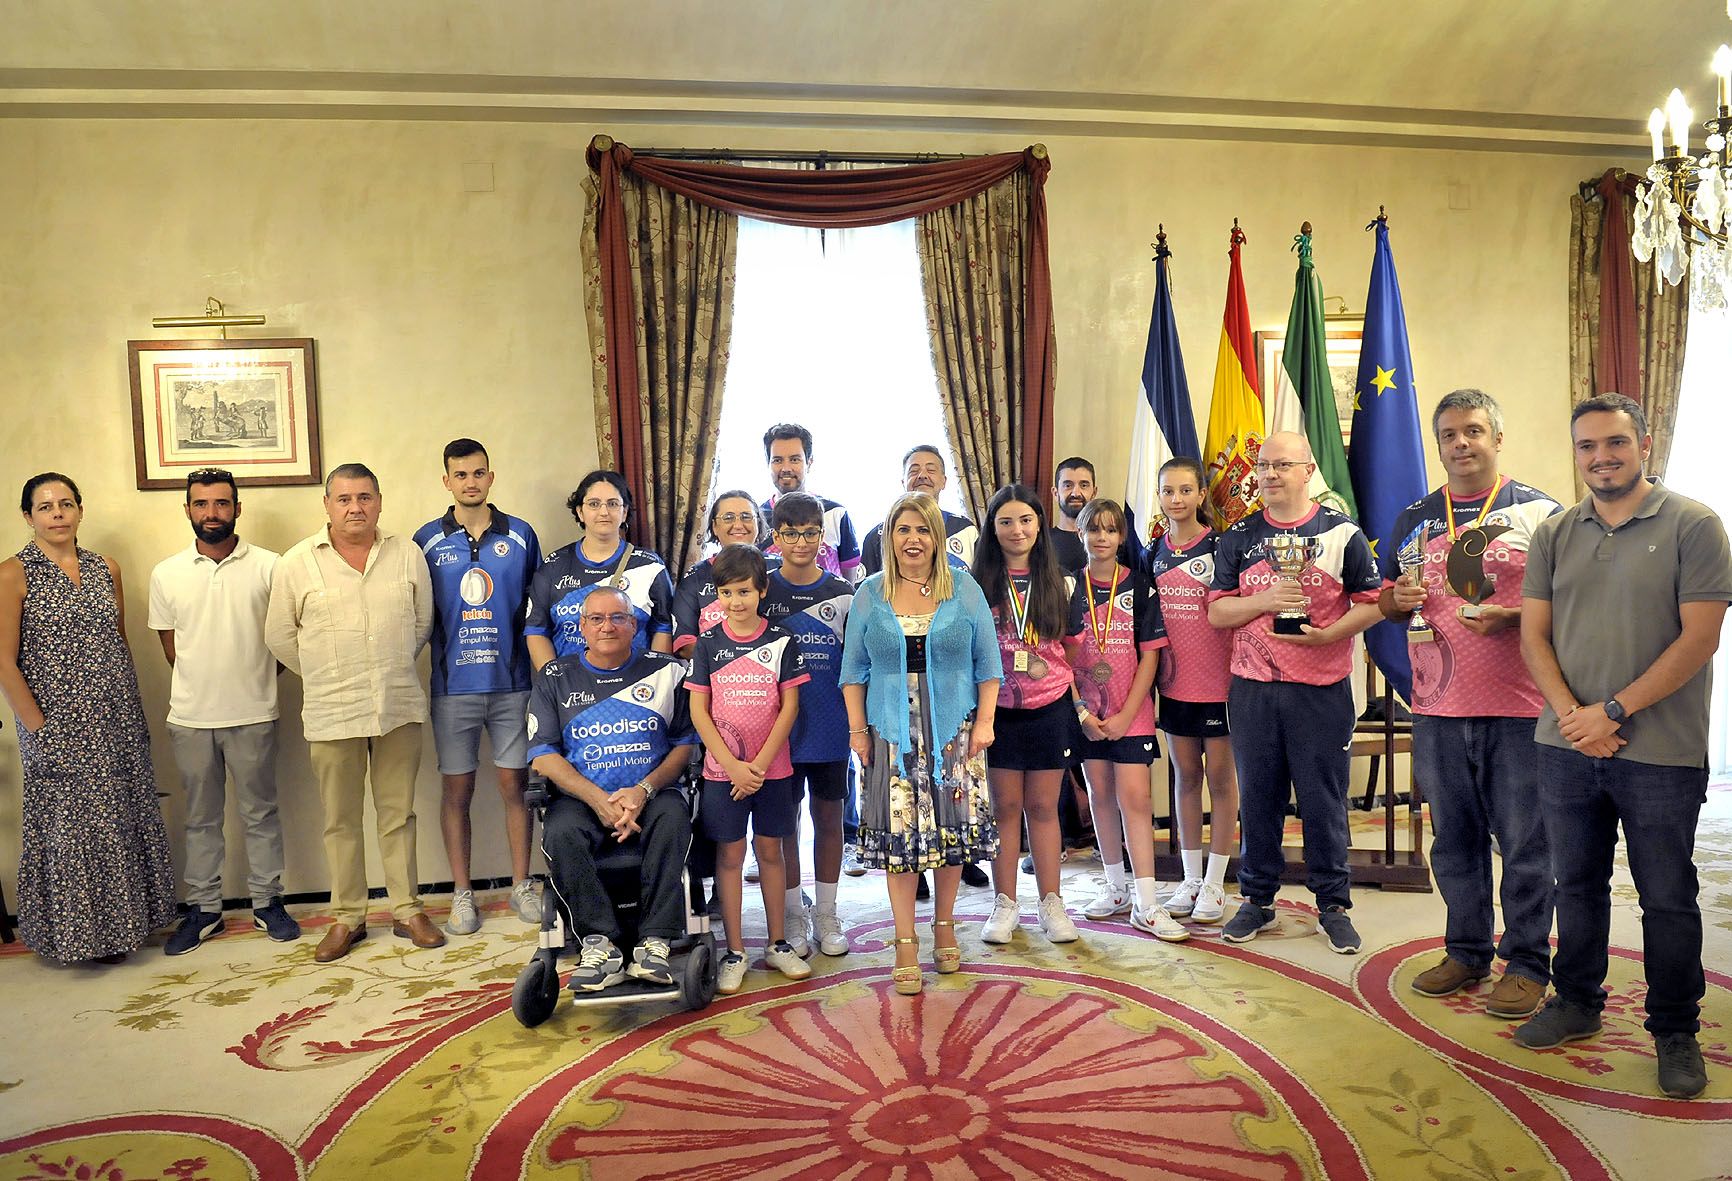 El Club de Tenis de Mesa Jerez, un ejemplo de inclusión deportiva que bate récords nacionales 